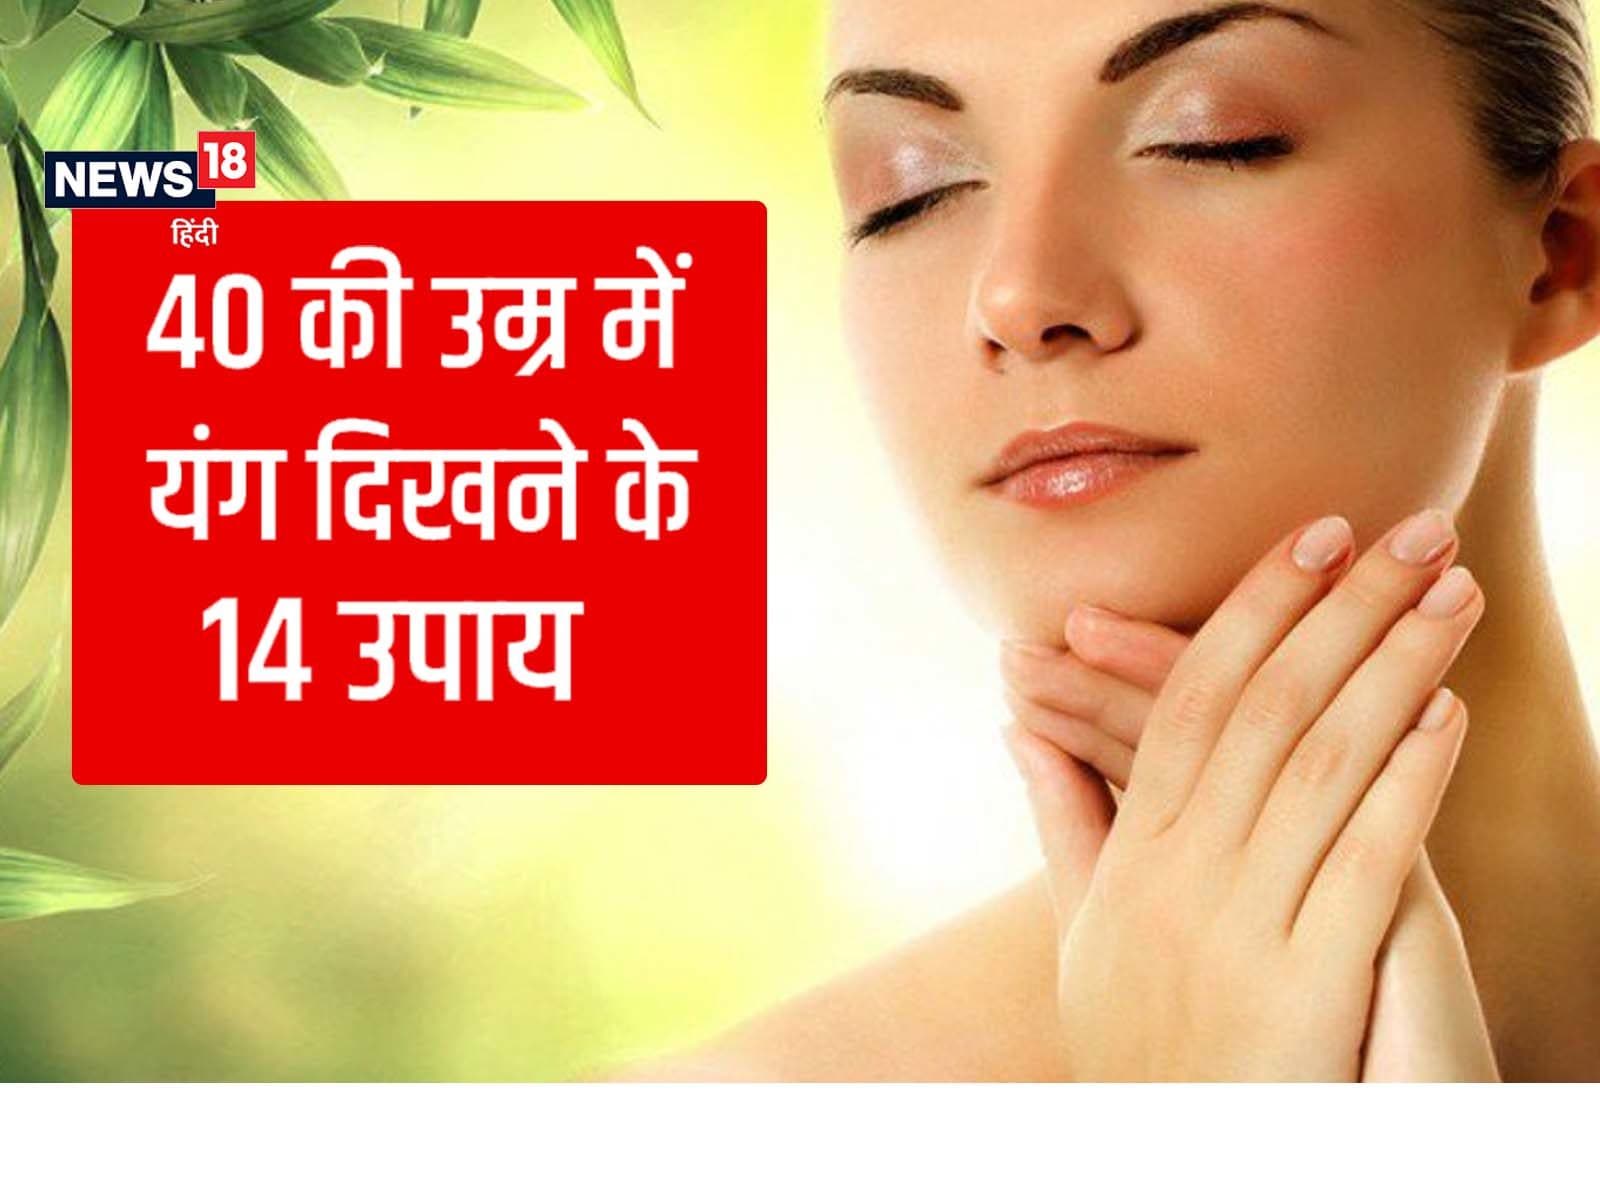 40 की उम्र में भी दिखेंगे यंग, अगर फॉलो करेंगे ये 14 सीक्रेट लाइफस्‍टाइल  टिप्‍स - skin care how to look younger after 40 lifestyle tips in hindi pra  – News18 हिंदी